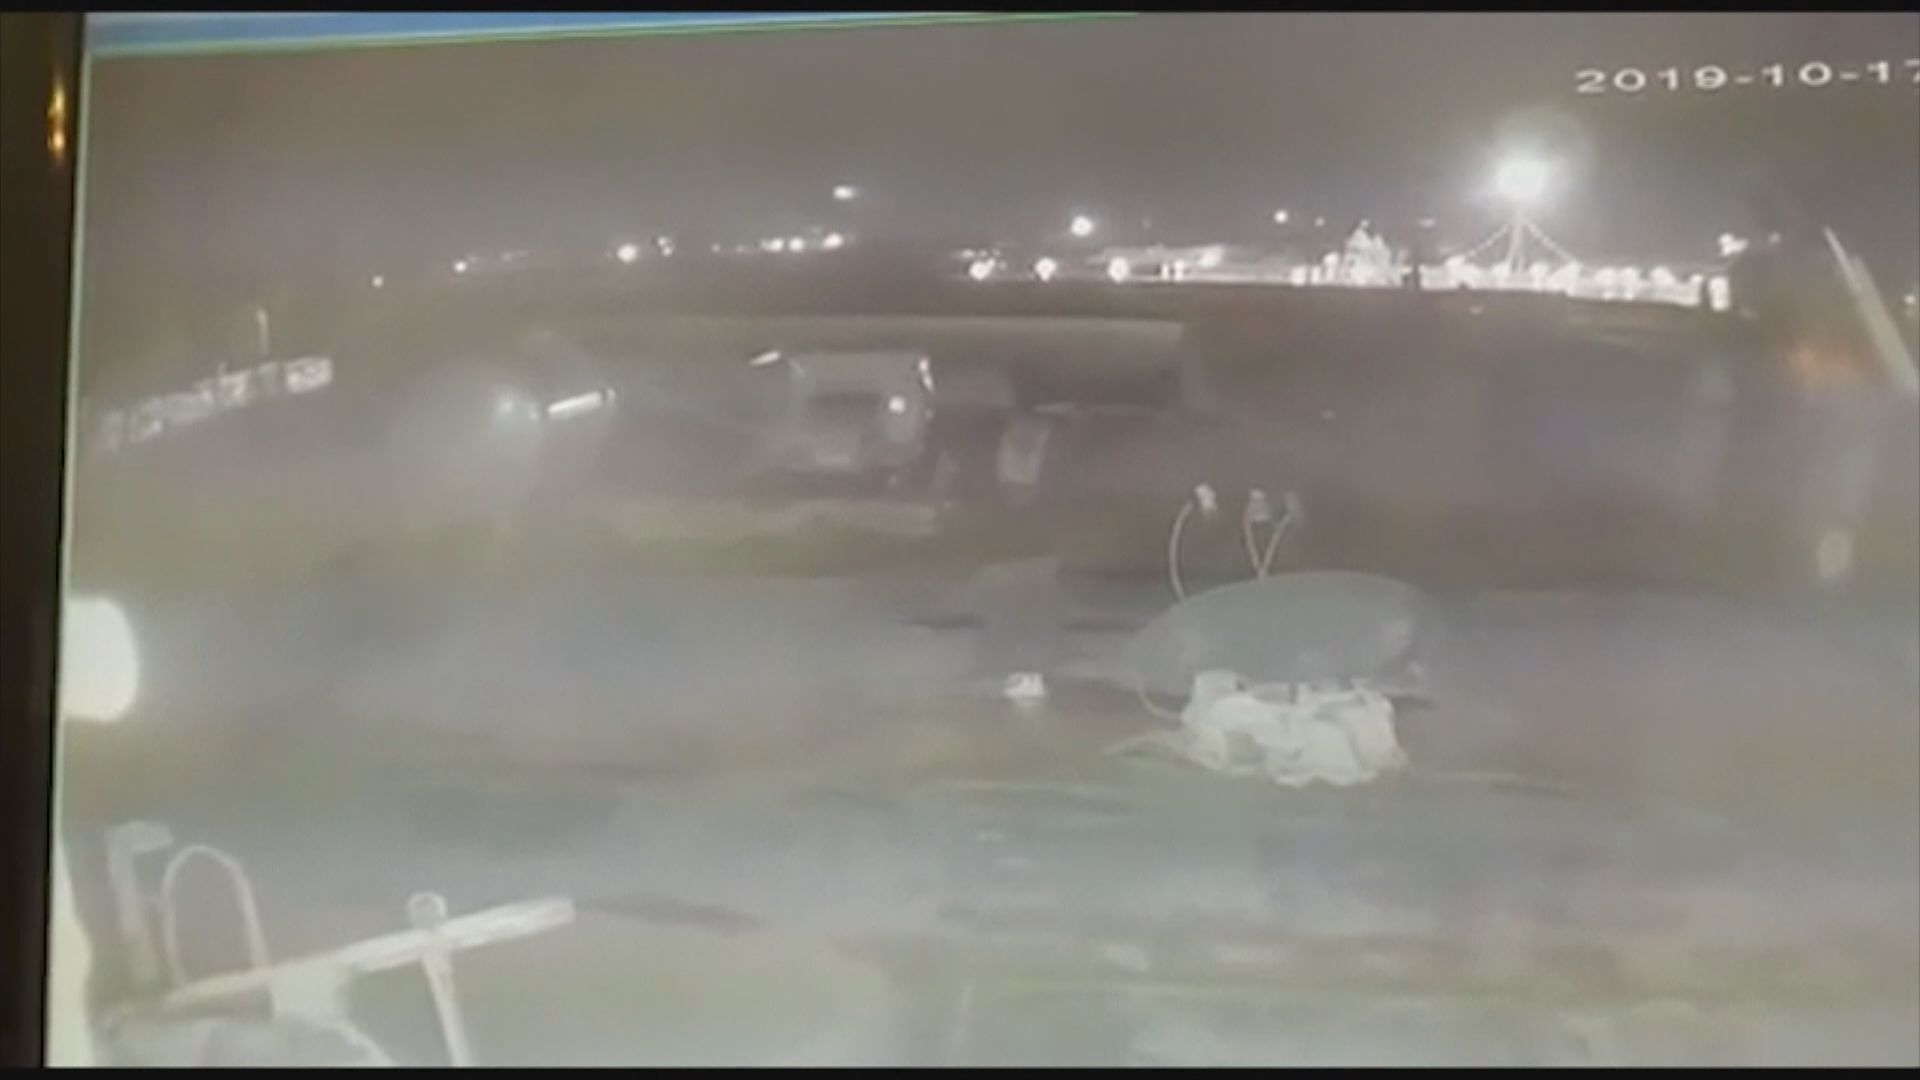 再有新片段顯示烏克蘭客機墜毀情況